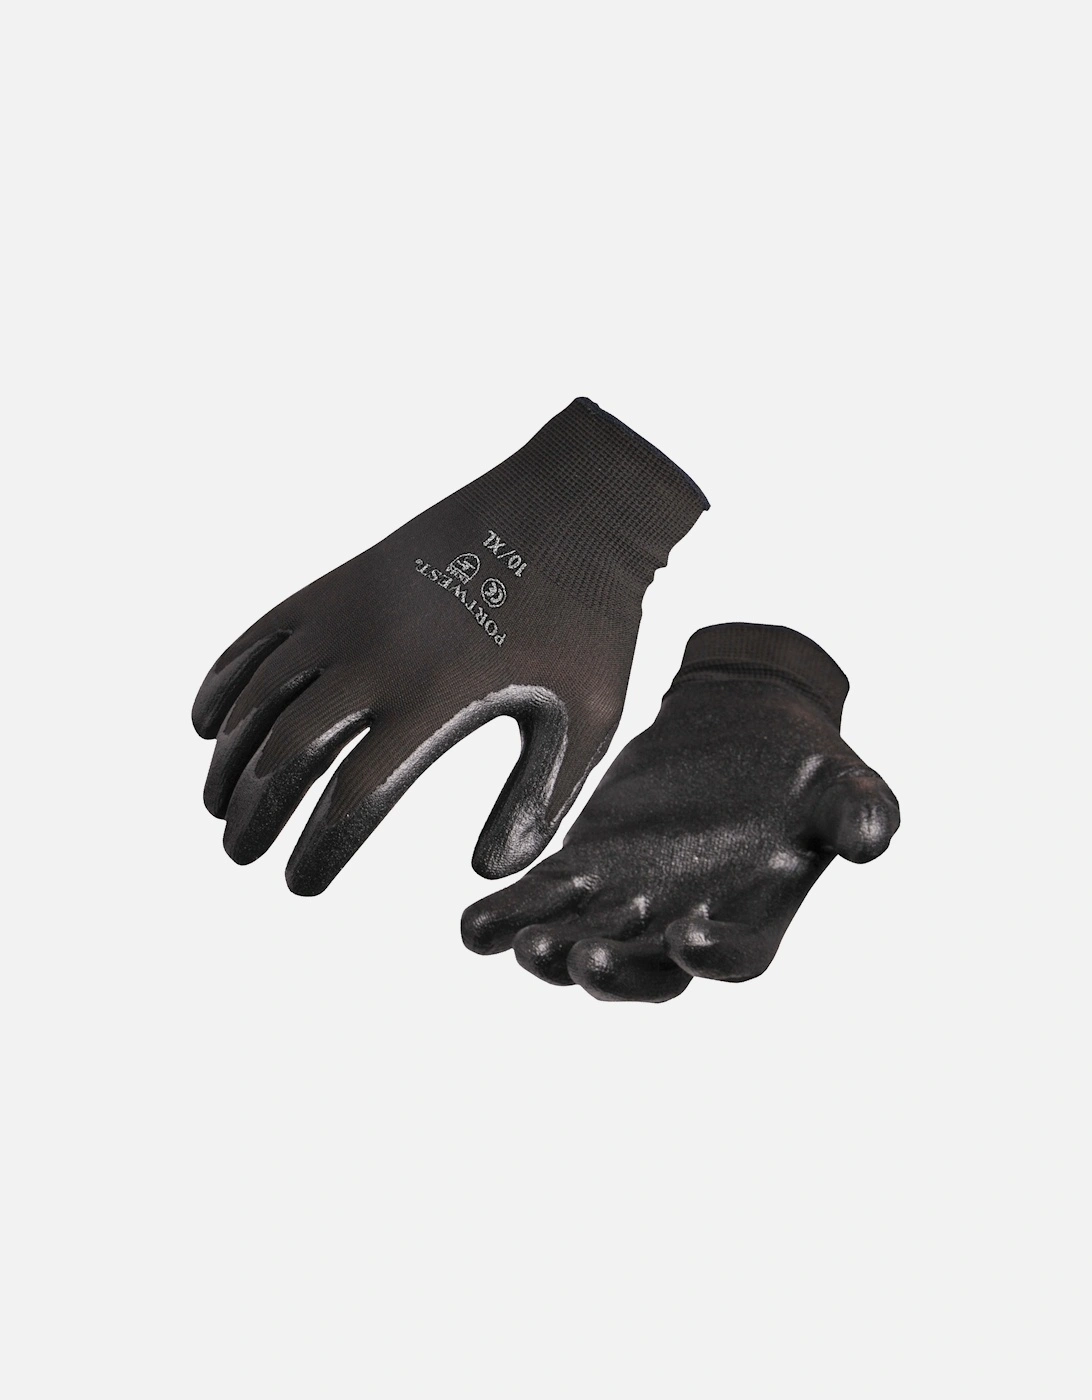 Dexti Grip Gloves (A320) / Safetywear / Workwear, 2 of 1